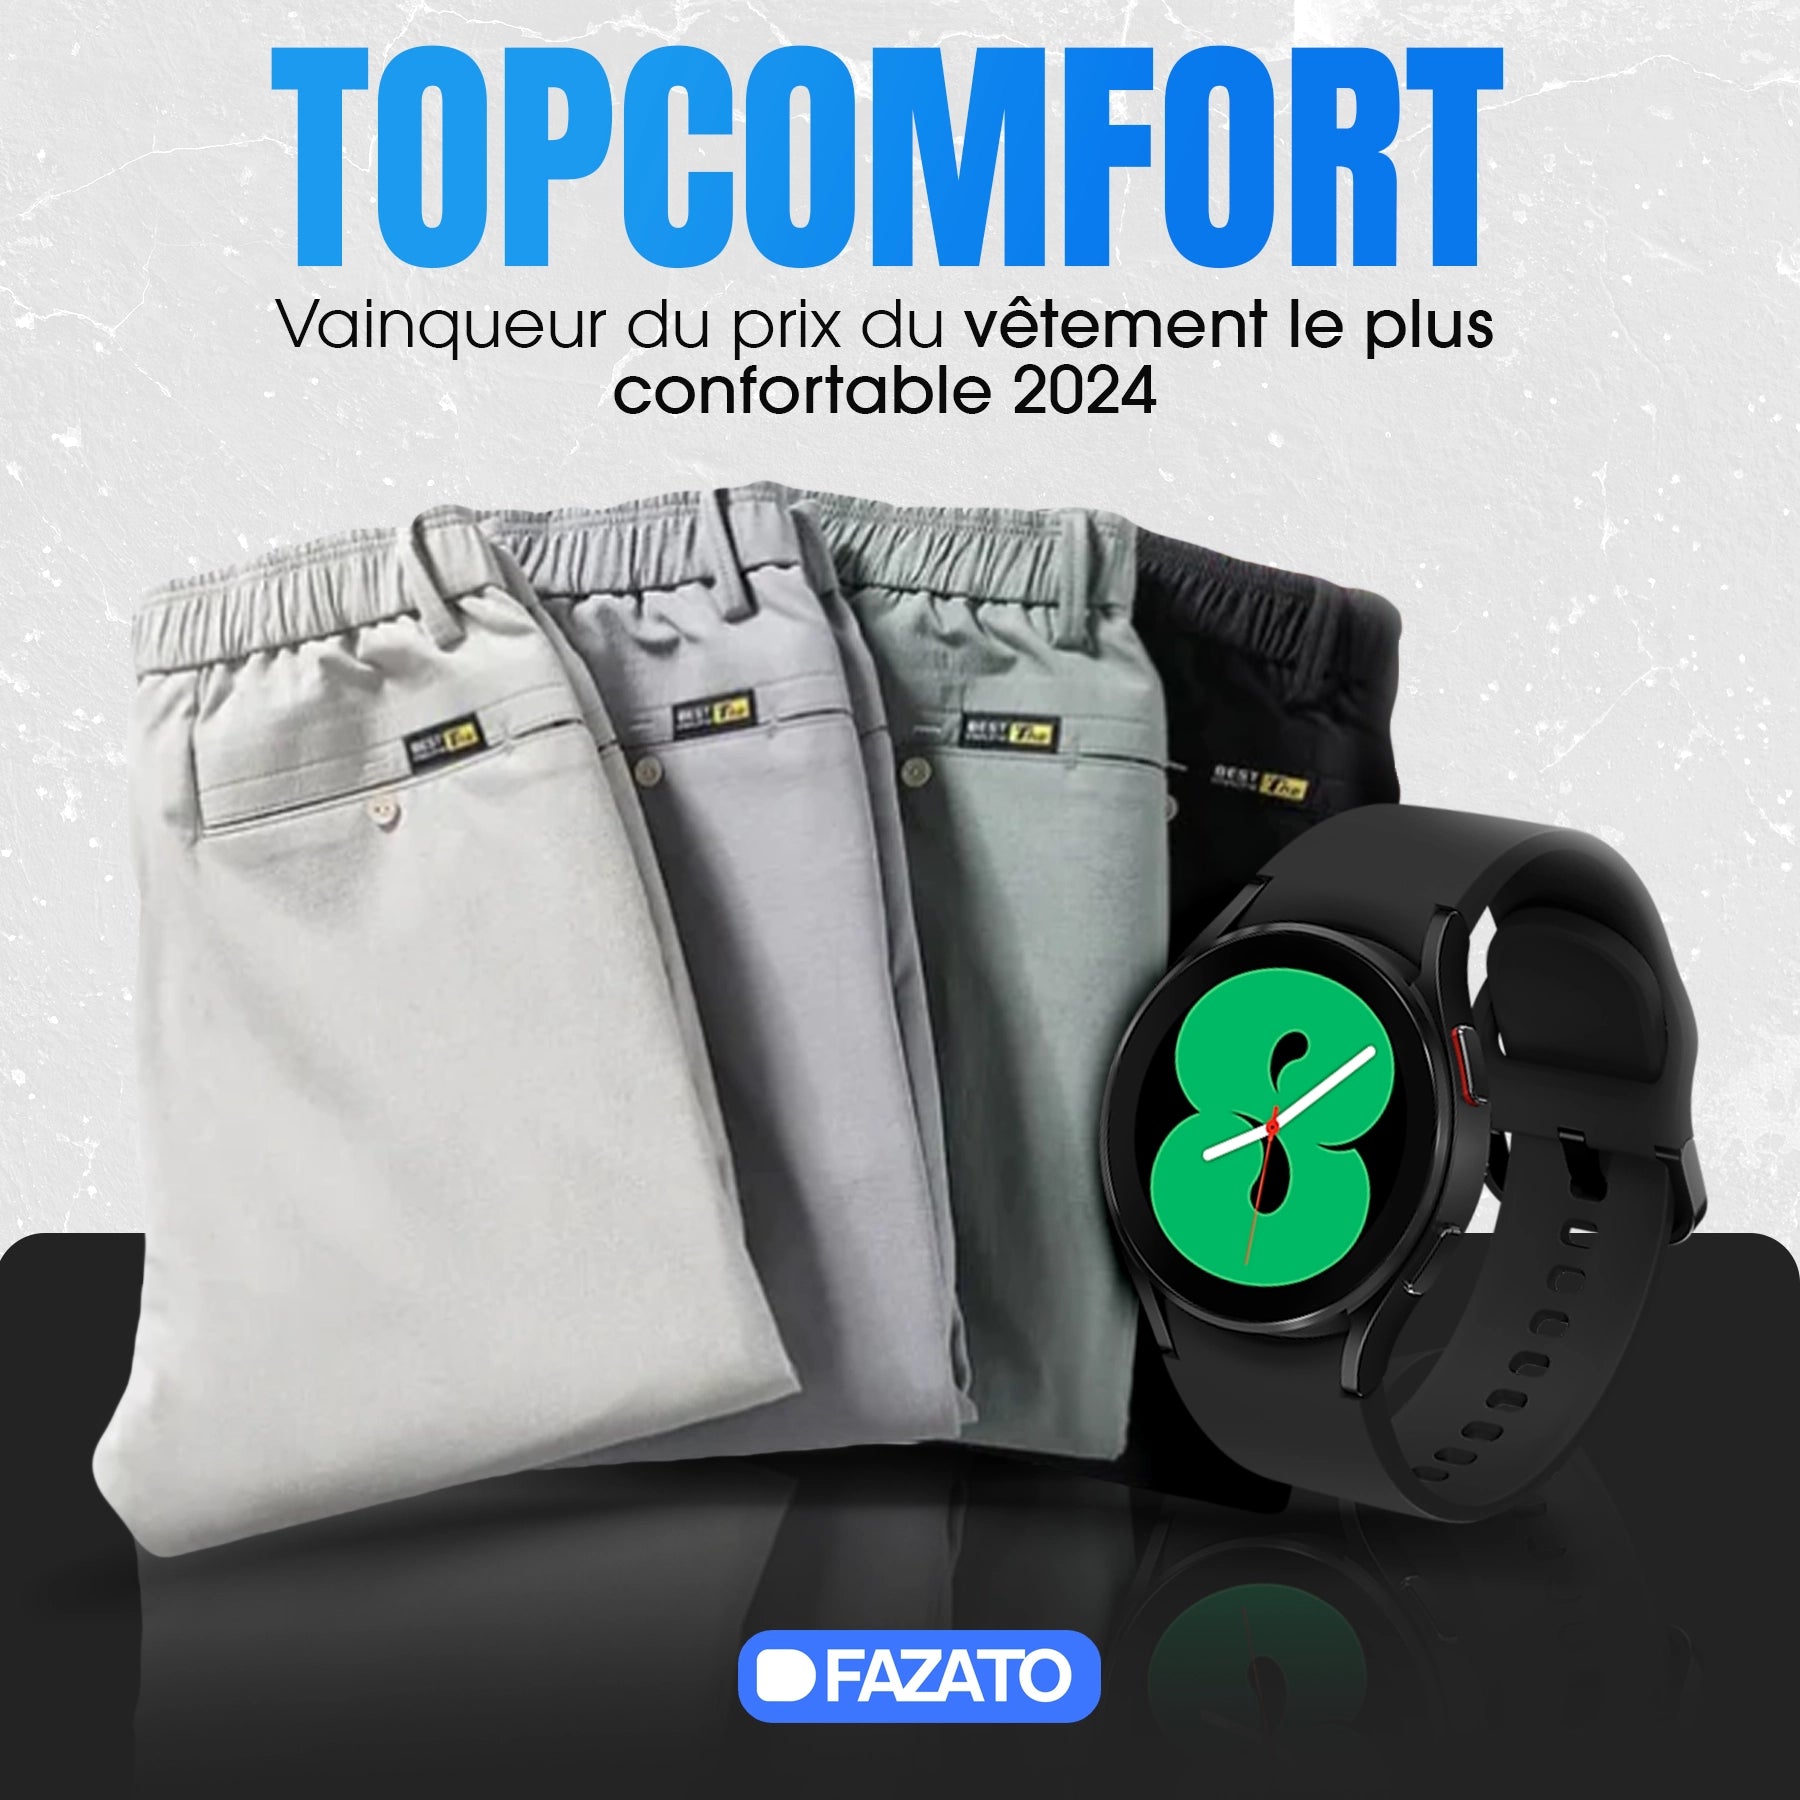 Pantalon TopComfort - PAYEZ 1 ET RECEVEZ 2 + Gagnez une Smartwatch en cadeau